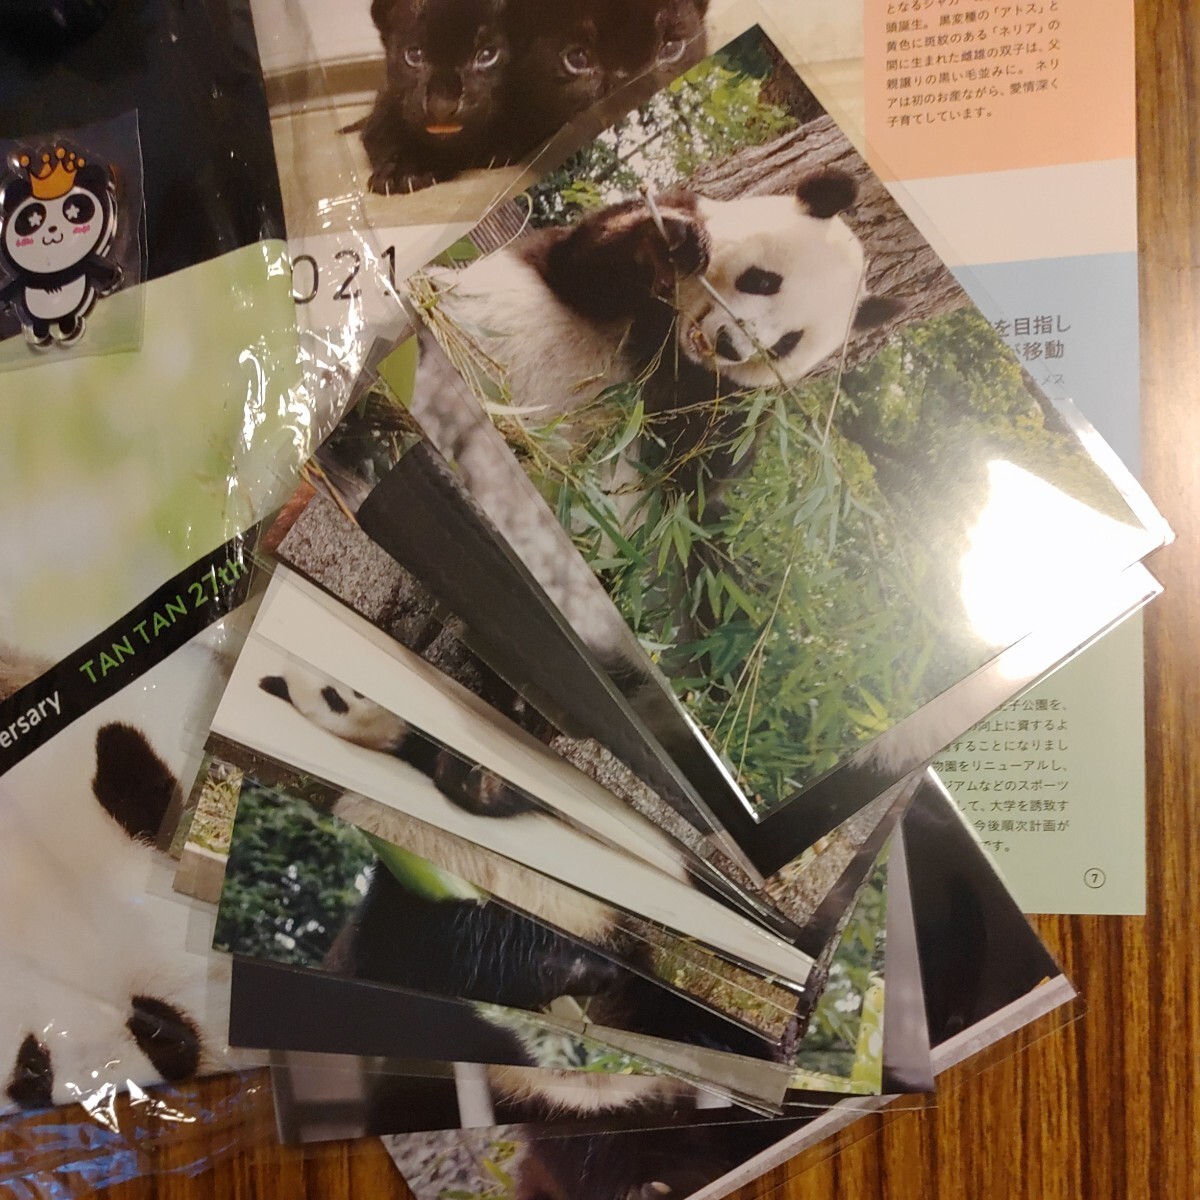 タンタン 旦旦 王子動物園 27th 誕生日Tシャツ ポストカードセット マグネット パンダ Panda ジャイアントパンダの画像4